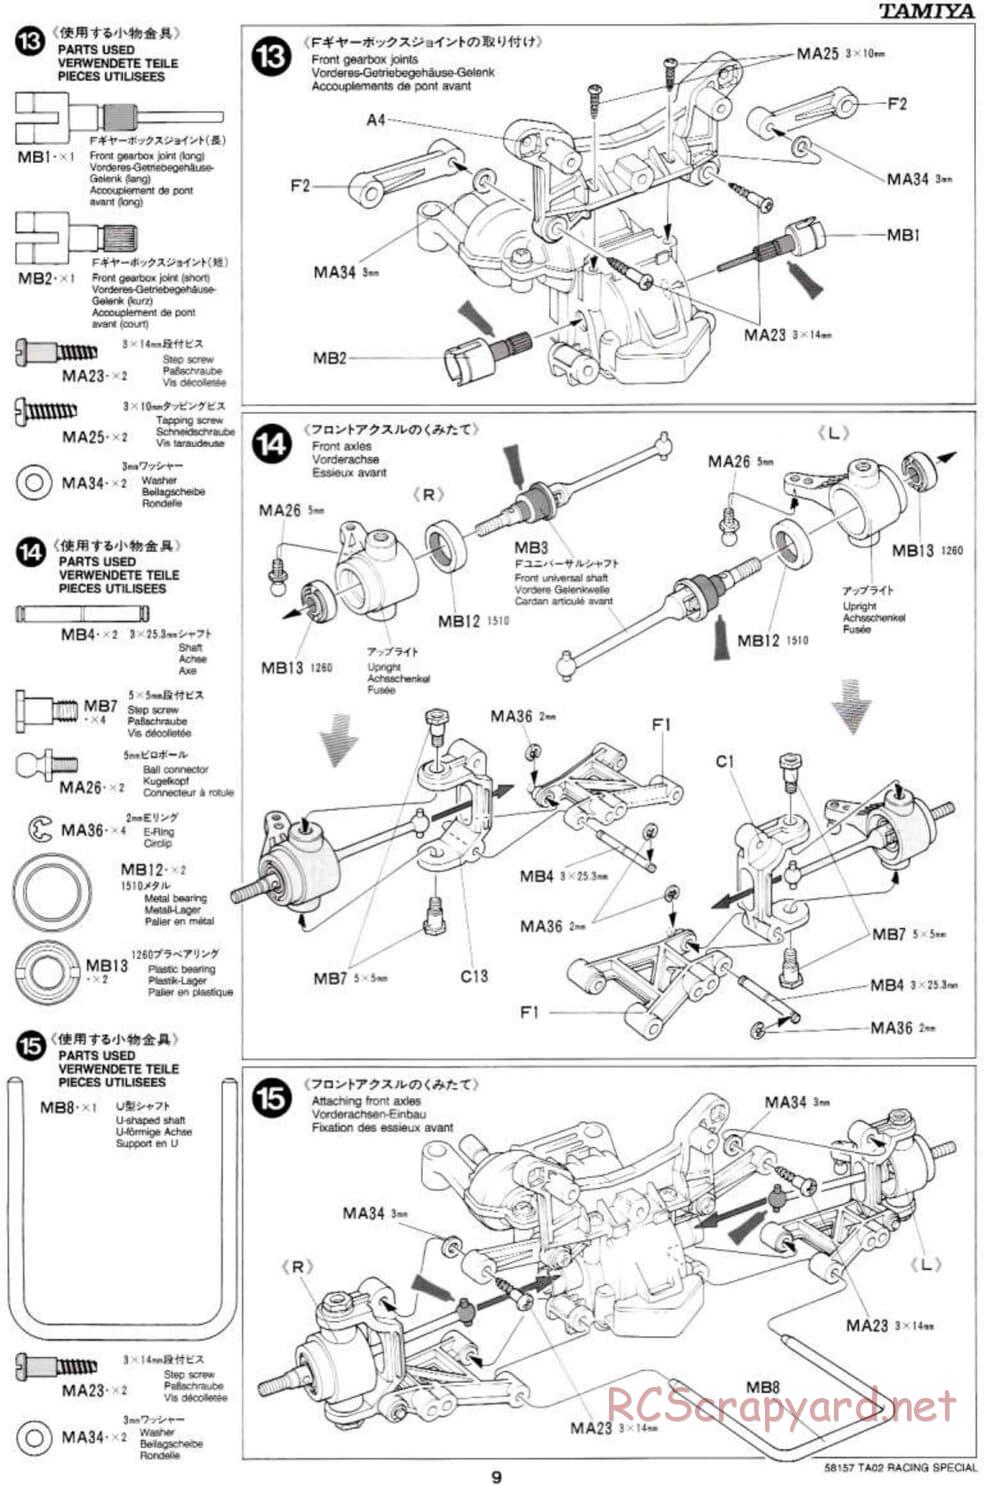 Tamiya - TA-02RS Chassis - Manual - Page 9